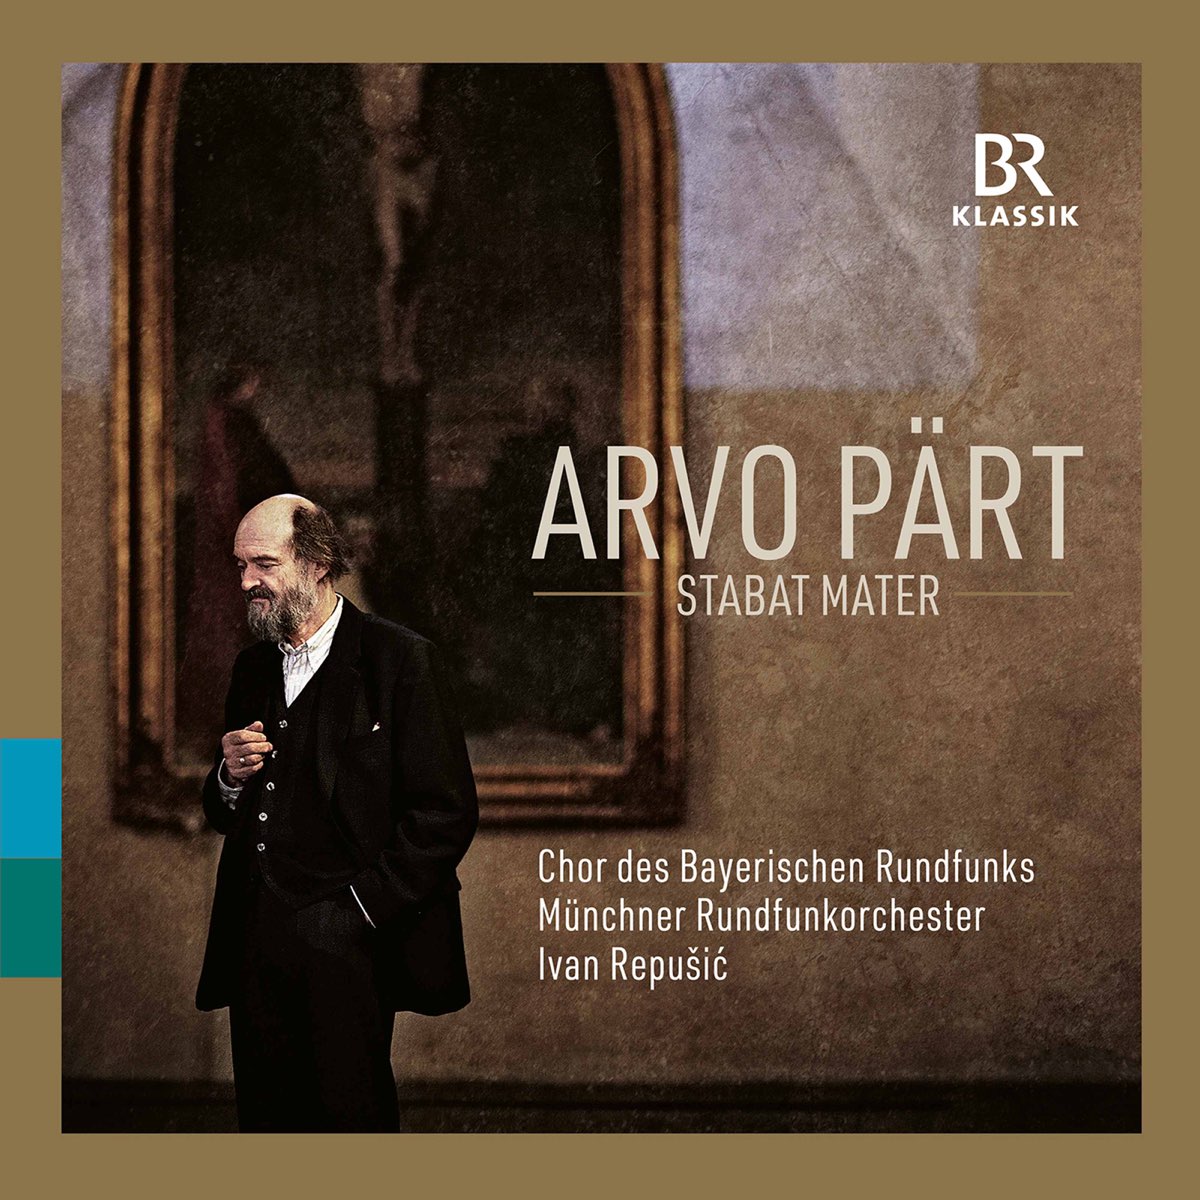 Chor des Bayerischen Rundfunks, Munchner Rundfunkorchester & Ivan Repusic - Arvo Part: Choral & Orchestral Works (2021) [FLAC 24bit/48kHz]